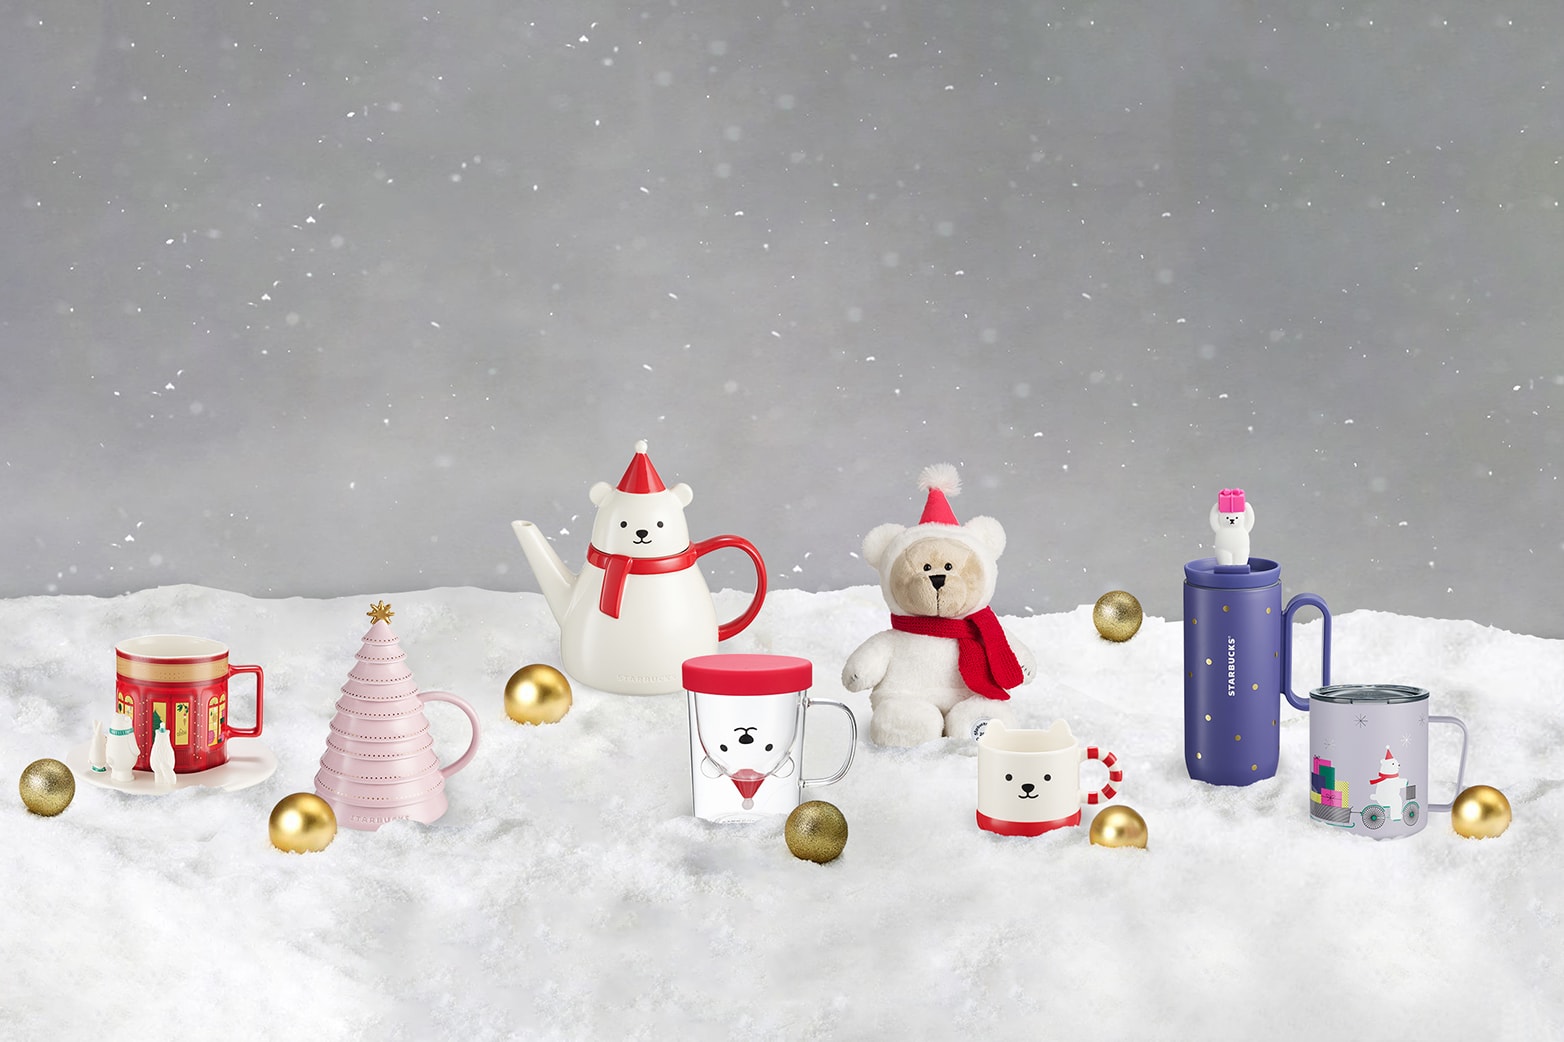 Starbucks Has An Upside Down Christmas Tree Mug For The Holidays